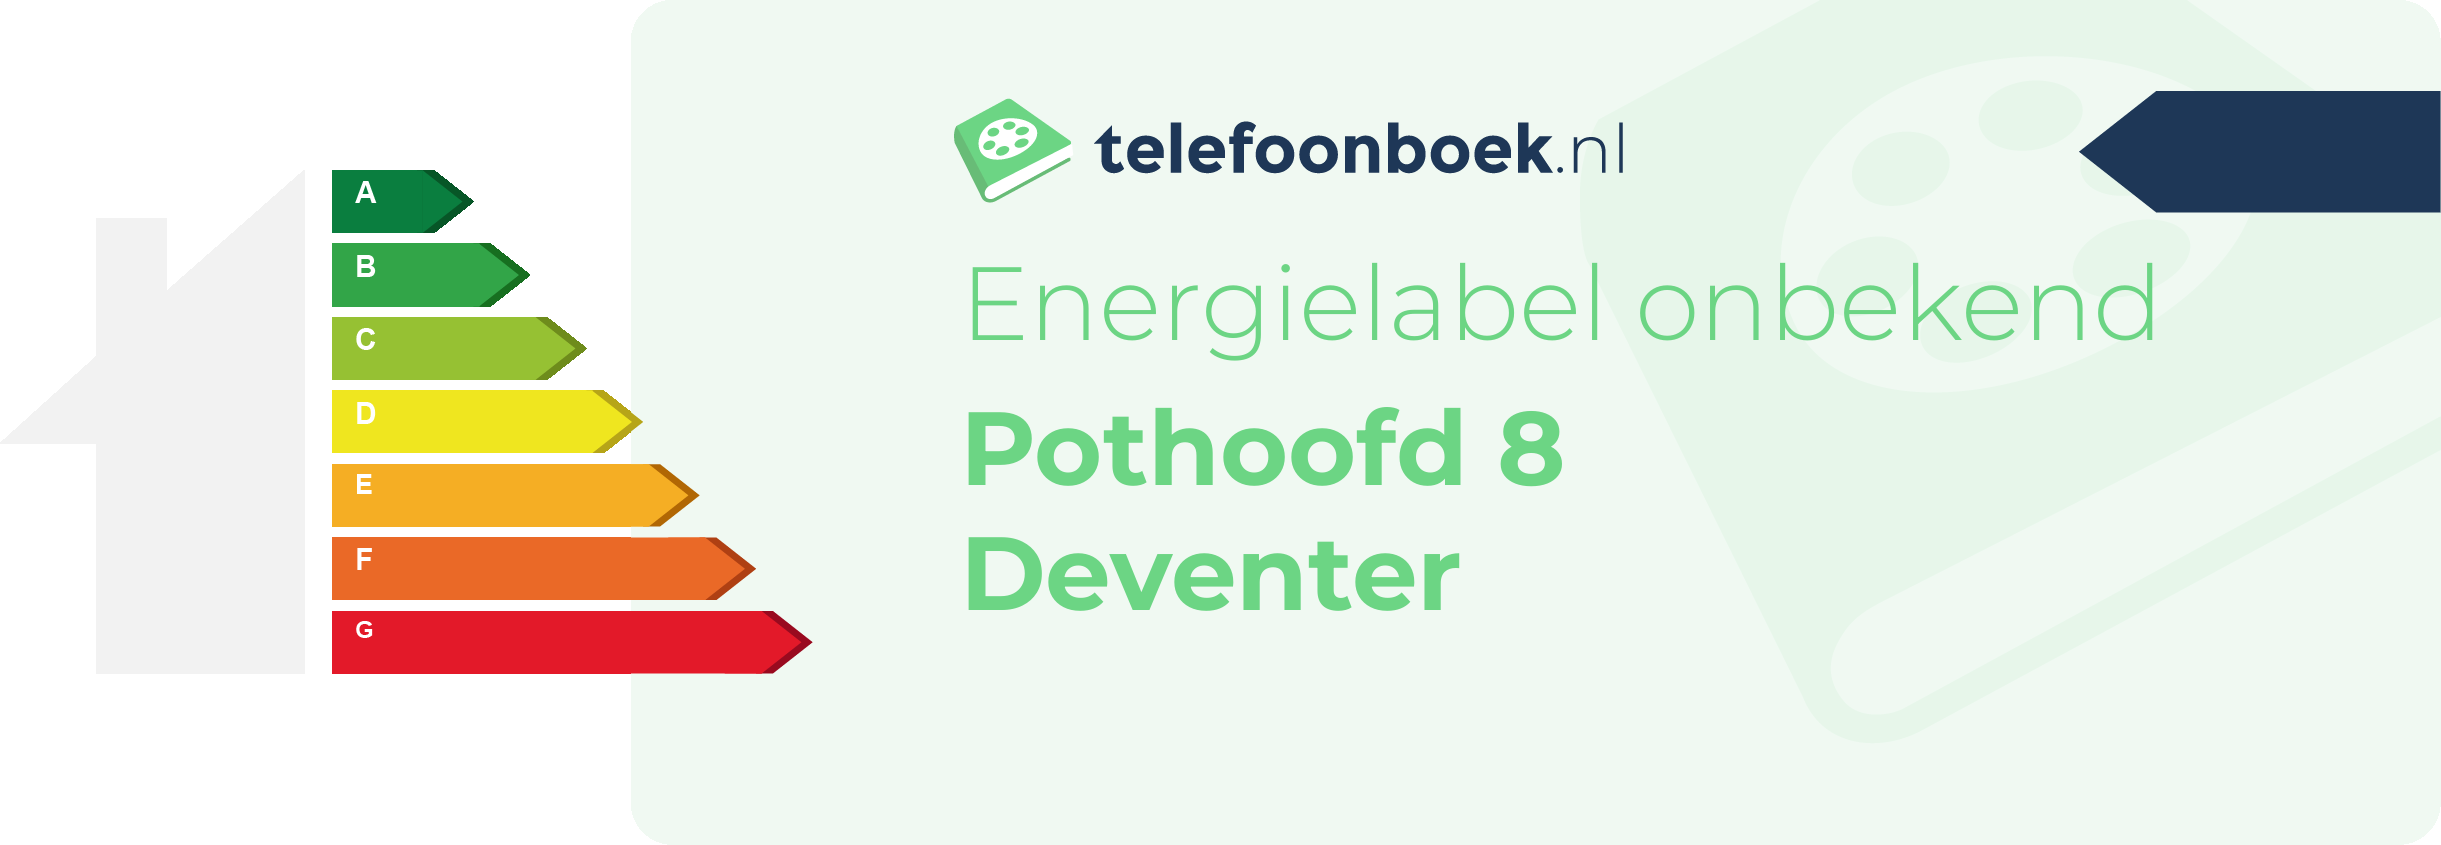 Energielabel Pothoofd 8 Deventer